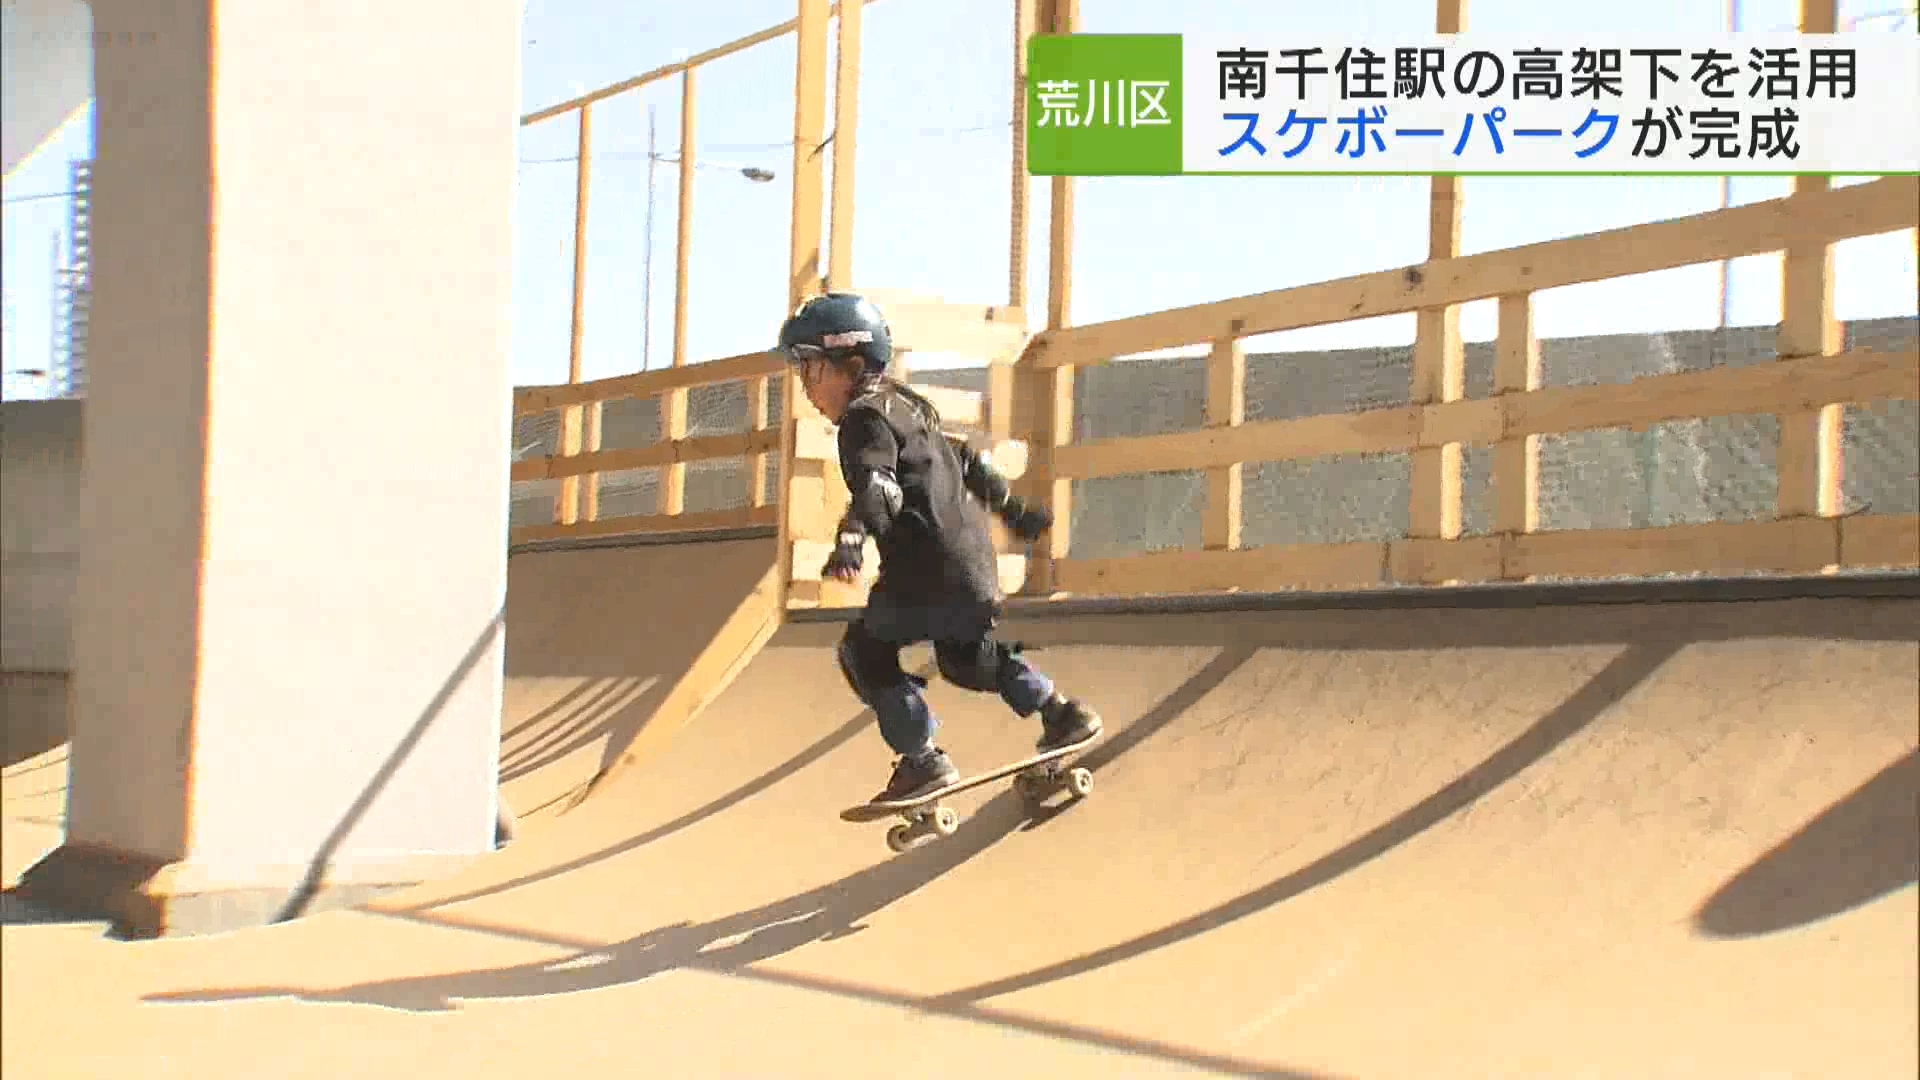 「駅から最も近い」スケートボードパークがオープンします。荒川区にある東京メトロ・南千住駅の高架下を活用したスケートボードパークが完成しました。